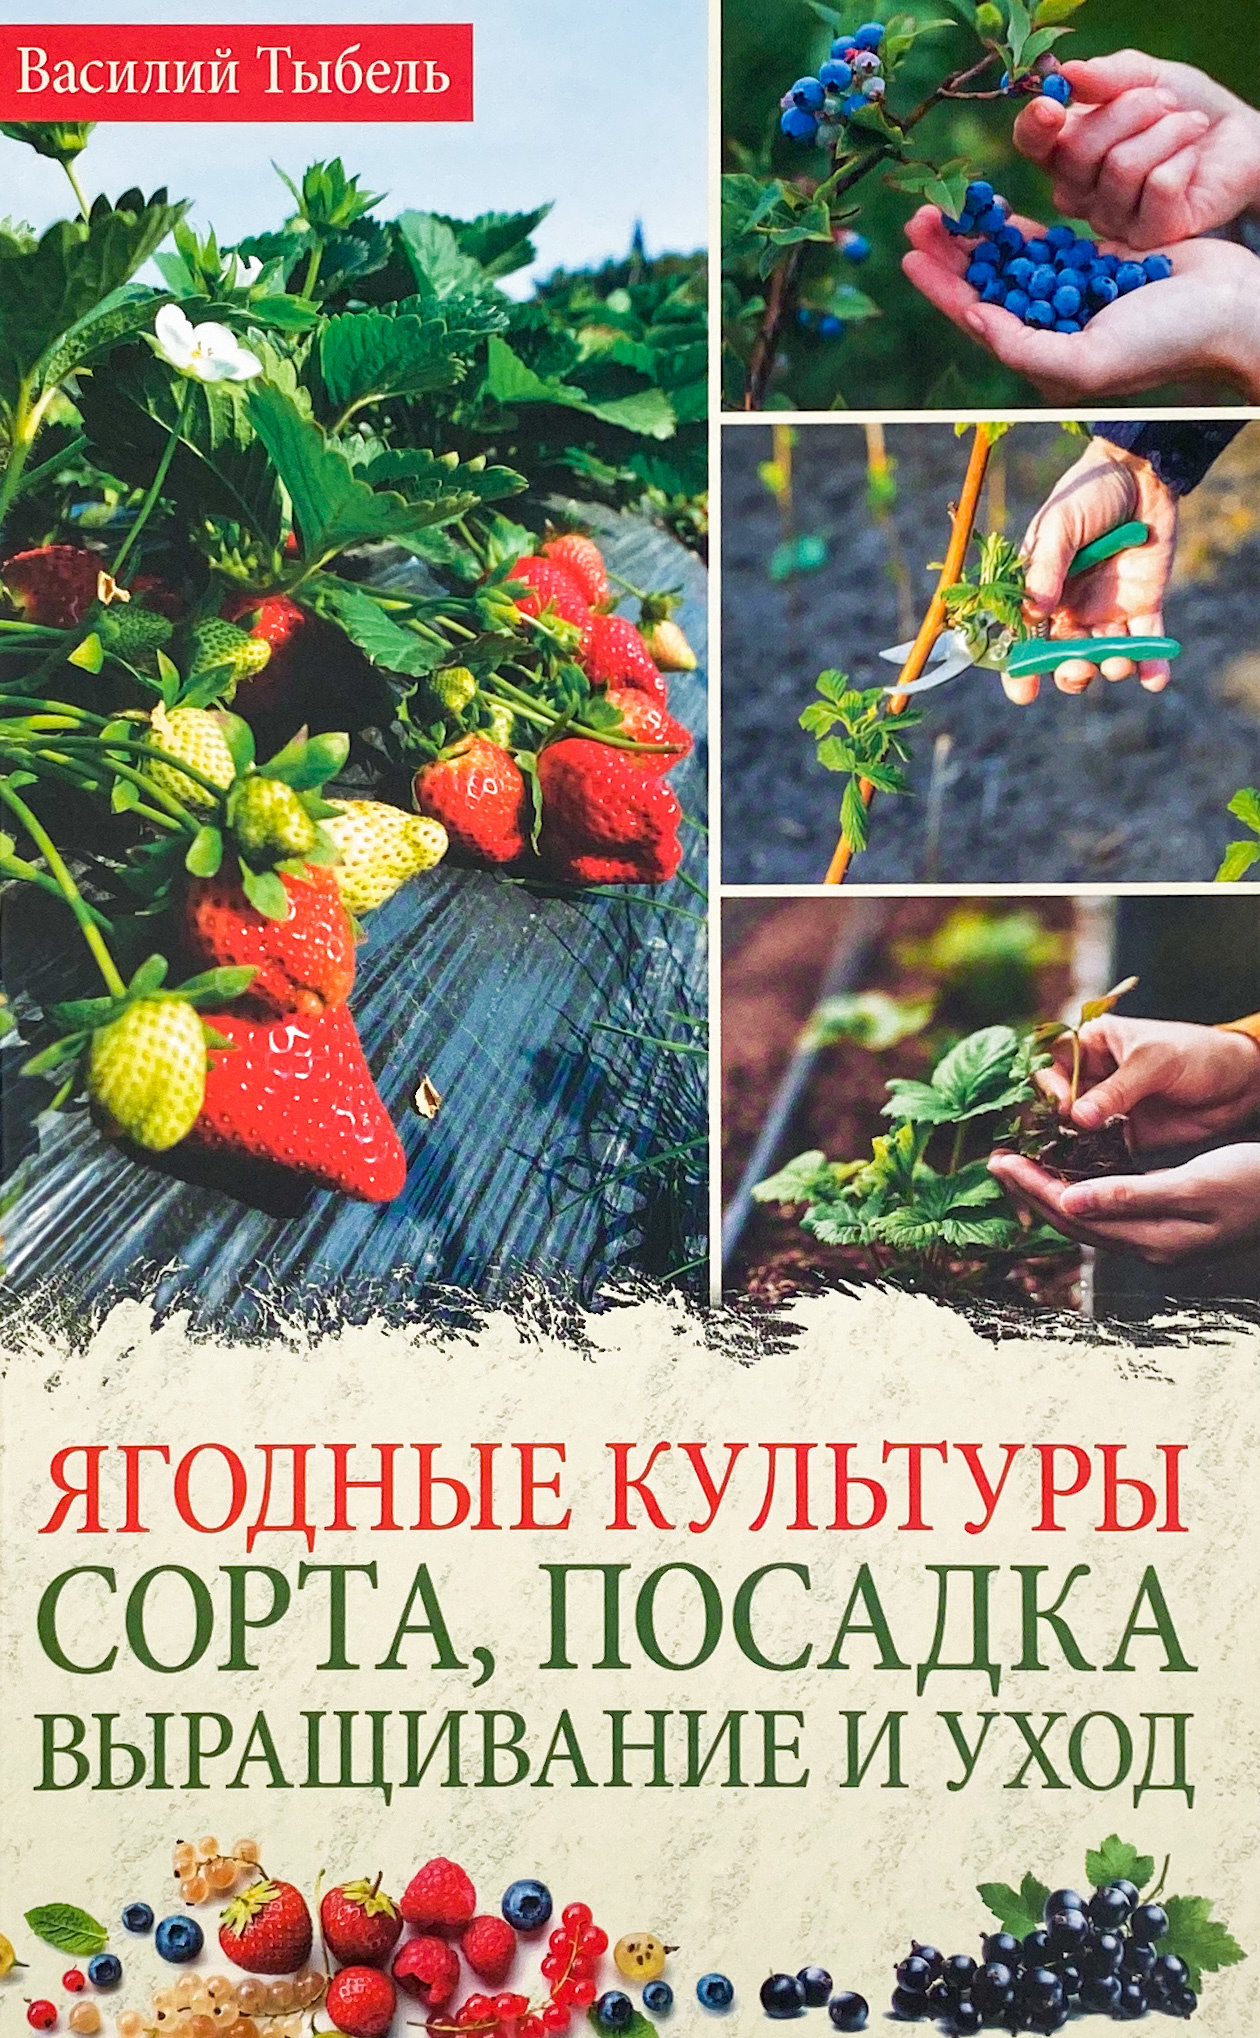 Ягодные культуры. Сорта, посадка, выращивание и уход . Автор — ВасильТибель. 